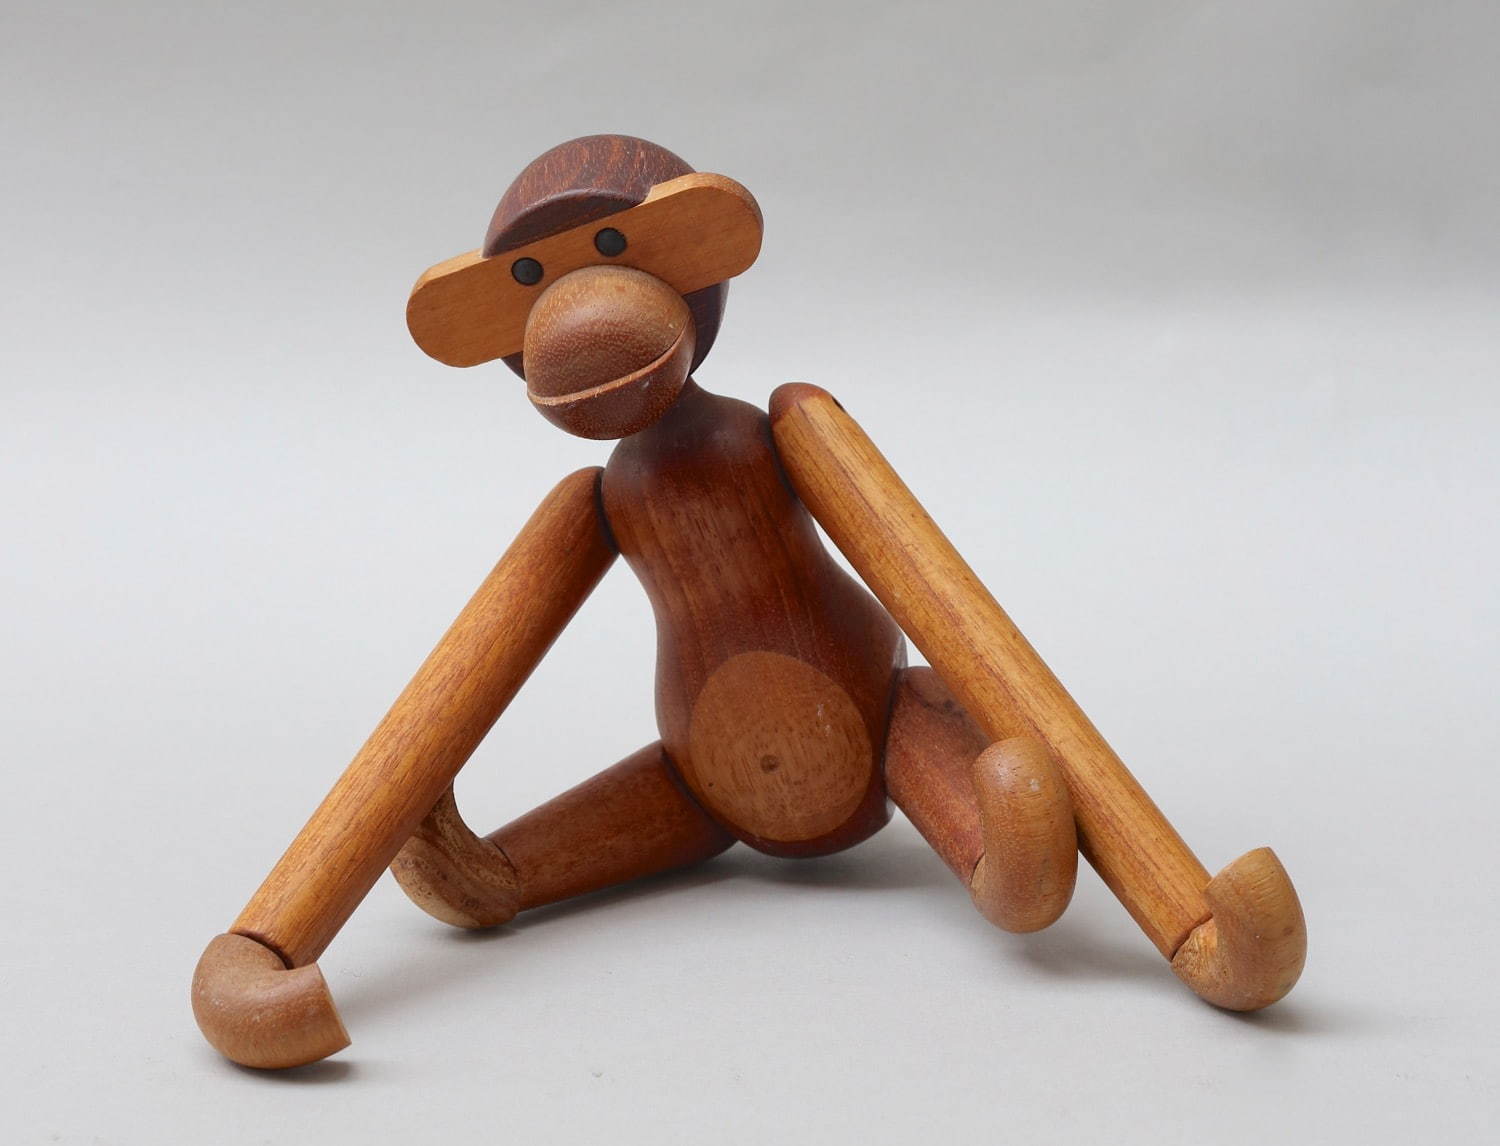 カイ・ボイイスン 玩具「サル」1951年 カイ· ボイイスン 個人蔵
photo: Michael Whiteway